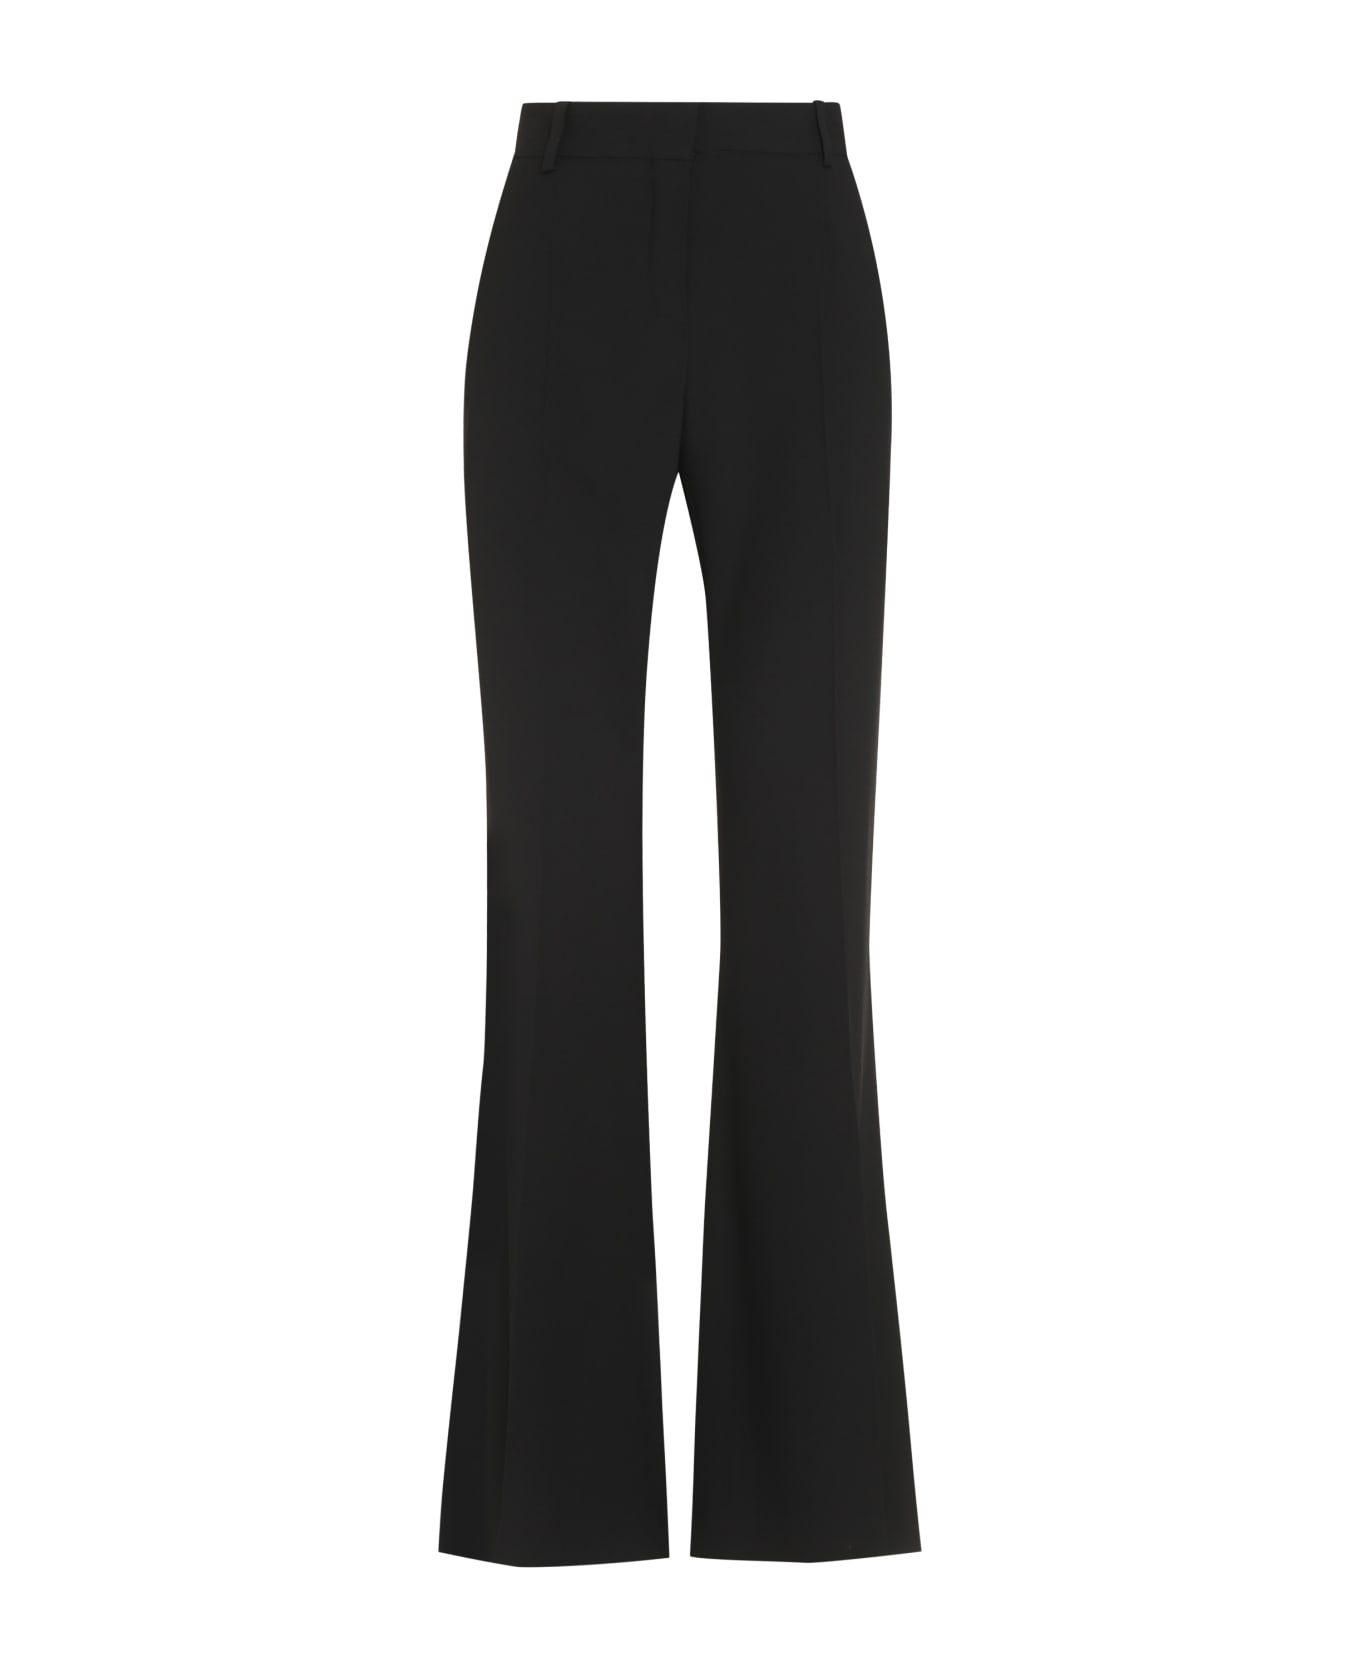 Nina Ricci Flared Trousers - black